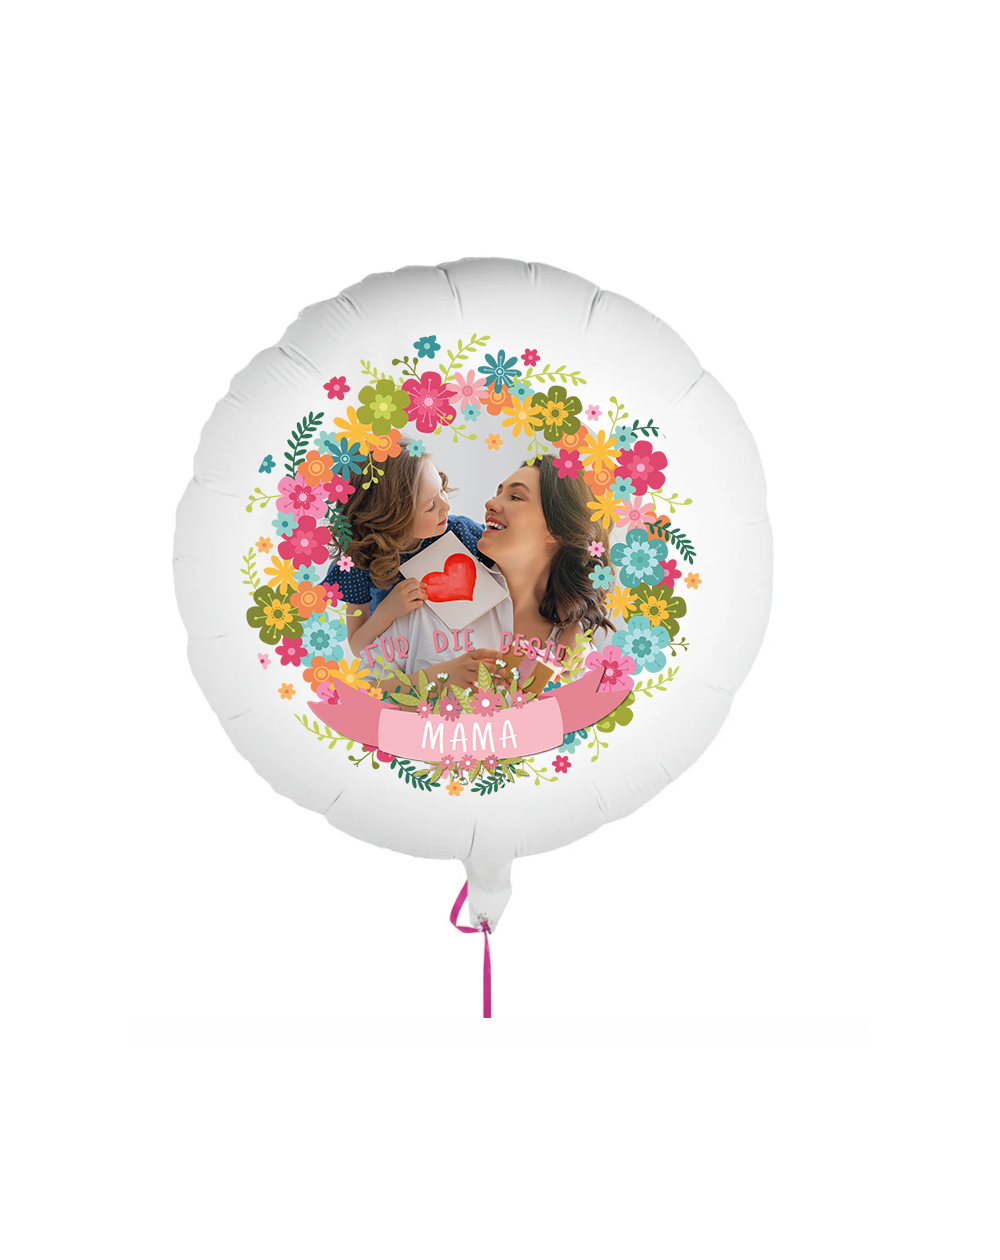 Fotoballon bedruckt mit einem Motiv zum Muttertag mit dem Text "Für die beste Mama" auf einem Geschenkballon